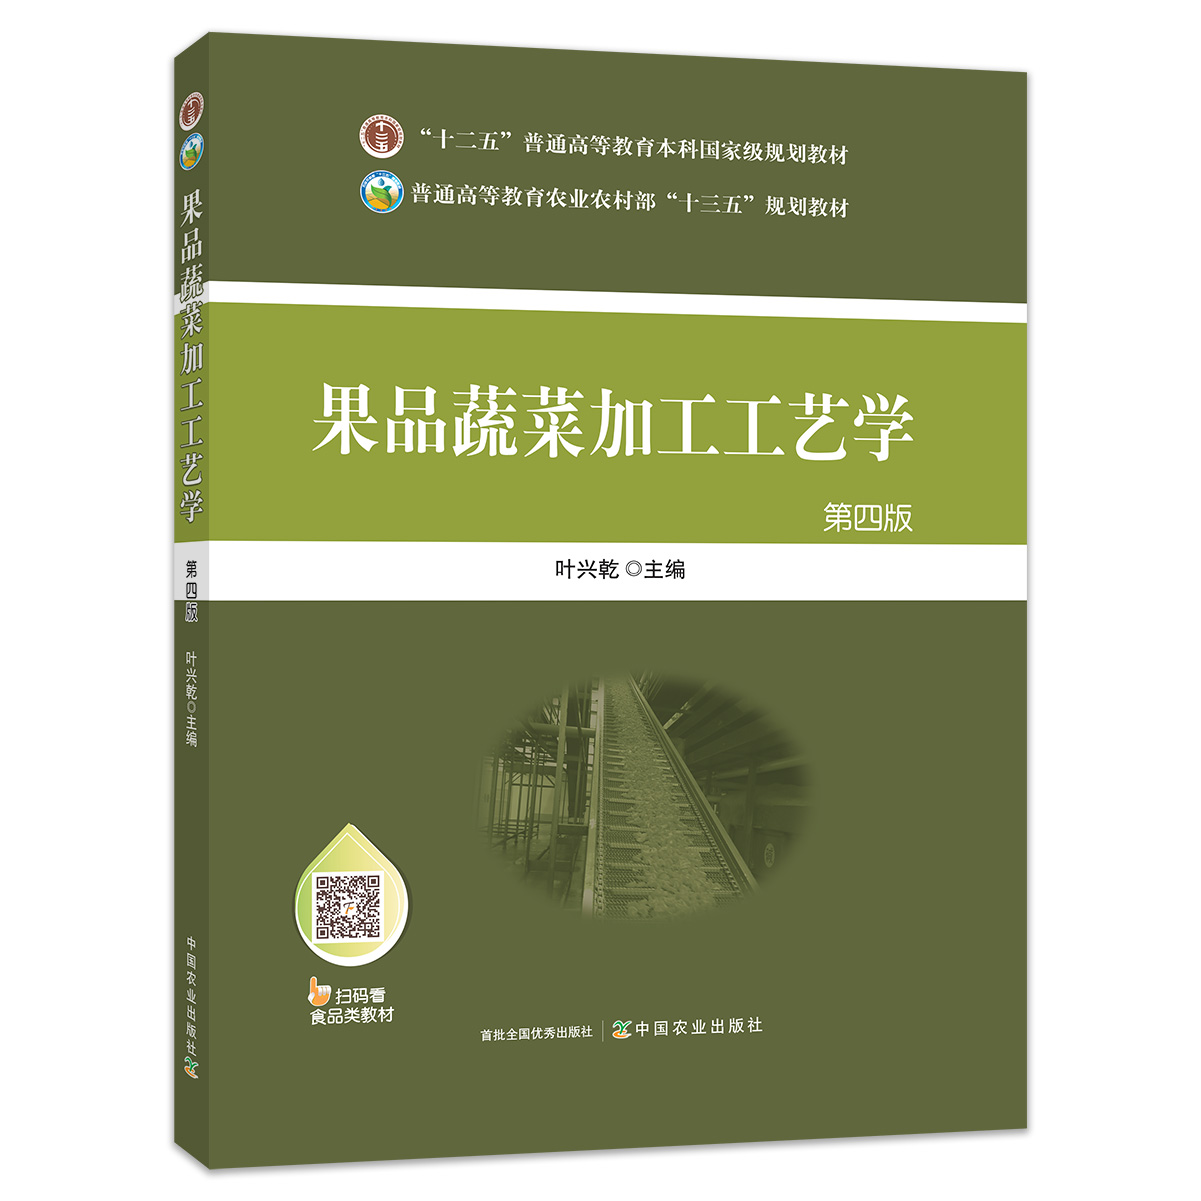 【中国农业出版社官方正版】果品蔬菜加工工艺学(第四版) 9787109258020